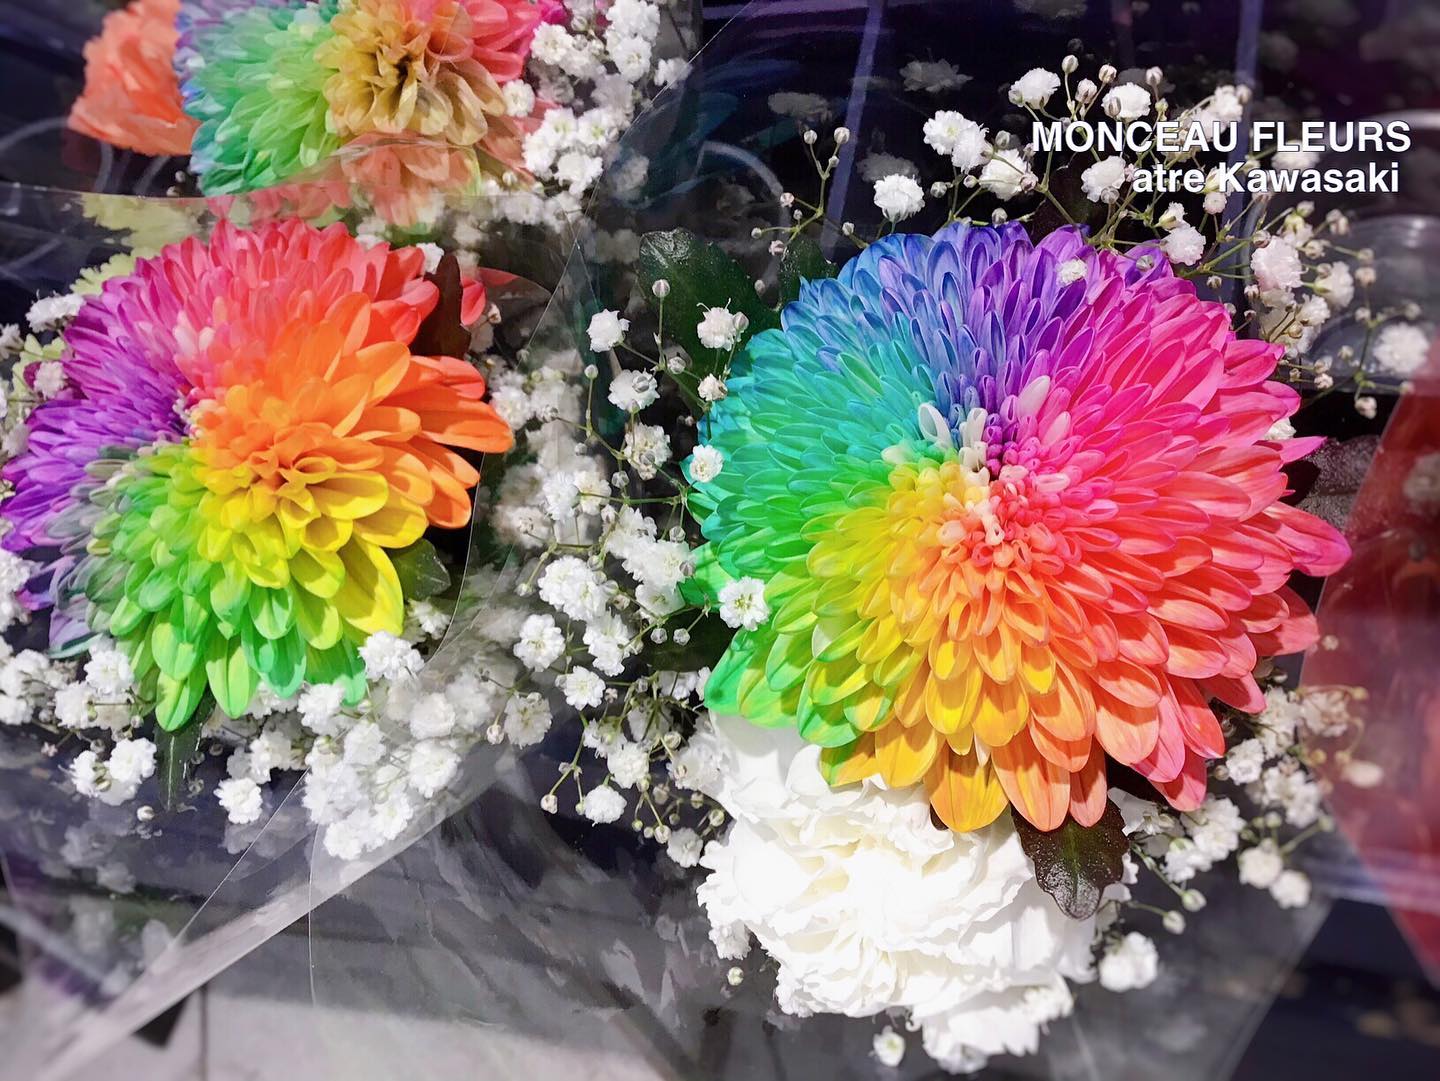 店頭定番で並ぶ
"ミニブーケ"♪

価格帯別に色々な種類が並ぶ中で、
今週末は、"レインボーマム"のミニブーケが並んでいます
^_^！！

珍しい『虹色のお花』♪
白い菊のお花に特別な加工を施したものですよ！

「一度、飾ってみたい。」と思って下っているお客様にも
"ミニブーケ"なので、お気軽にお試し頂けますね！！

もともと菊のお花ですので、花持ちも良好！
ご自宅用にもプレゼント用にもオススメです^_^

この機会に是非♪カラフルな虹色のお花で
ハッピーな雰囲気をお楽しみ下さい！

スタッフ一同、お客様のご来店を
心よりお待ちしております！

#パリ

お気軽にお問い合わせください♪
★★★★★★★★★★★★★★★
【モンソーフルール アトレ川崎店】
〒210-0007
神奈川県川崎市川崎区駅前本町26-1
アトレ川崎1F
TEL&FAX:044-200-6701
営業時間:10:00〜20:00
（まん延防止措置の為、時短営業中です。）
★★★★★★★★★★★★★★★
モンソーフルールはパリ発！
ヨーロッパ有数のフラワーチェーンブランドです♪